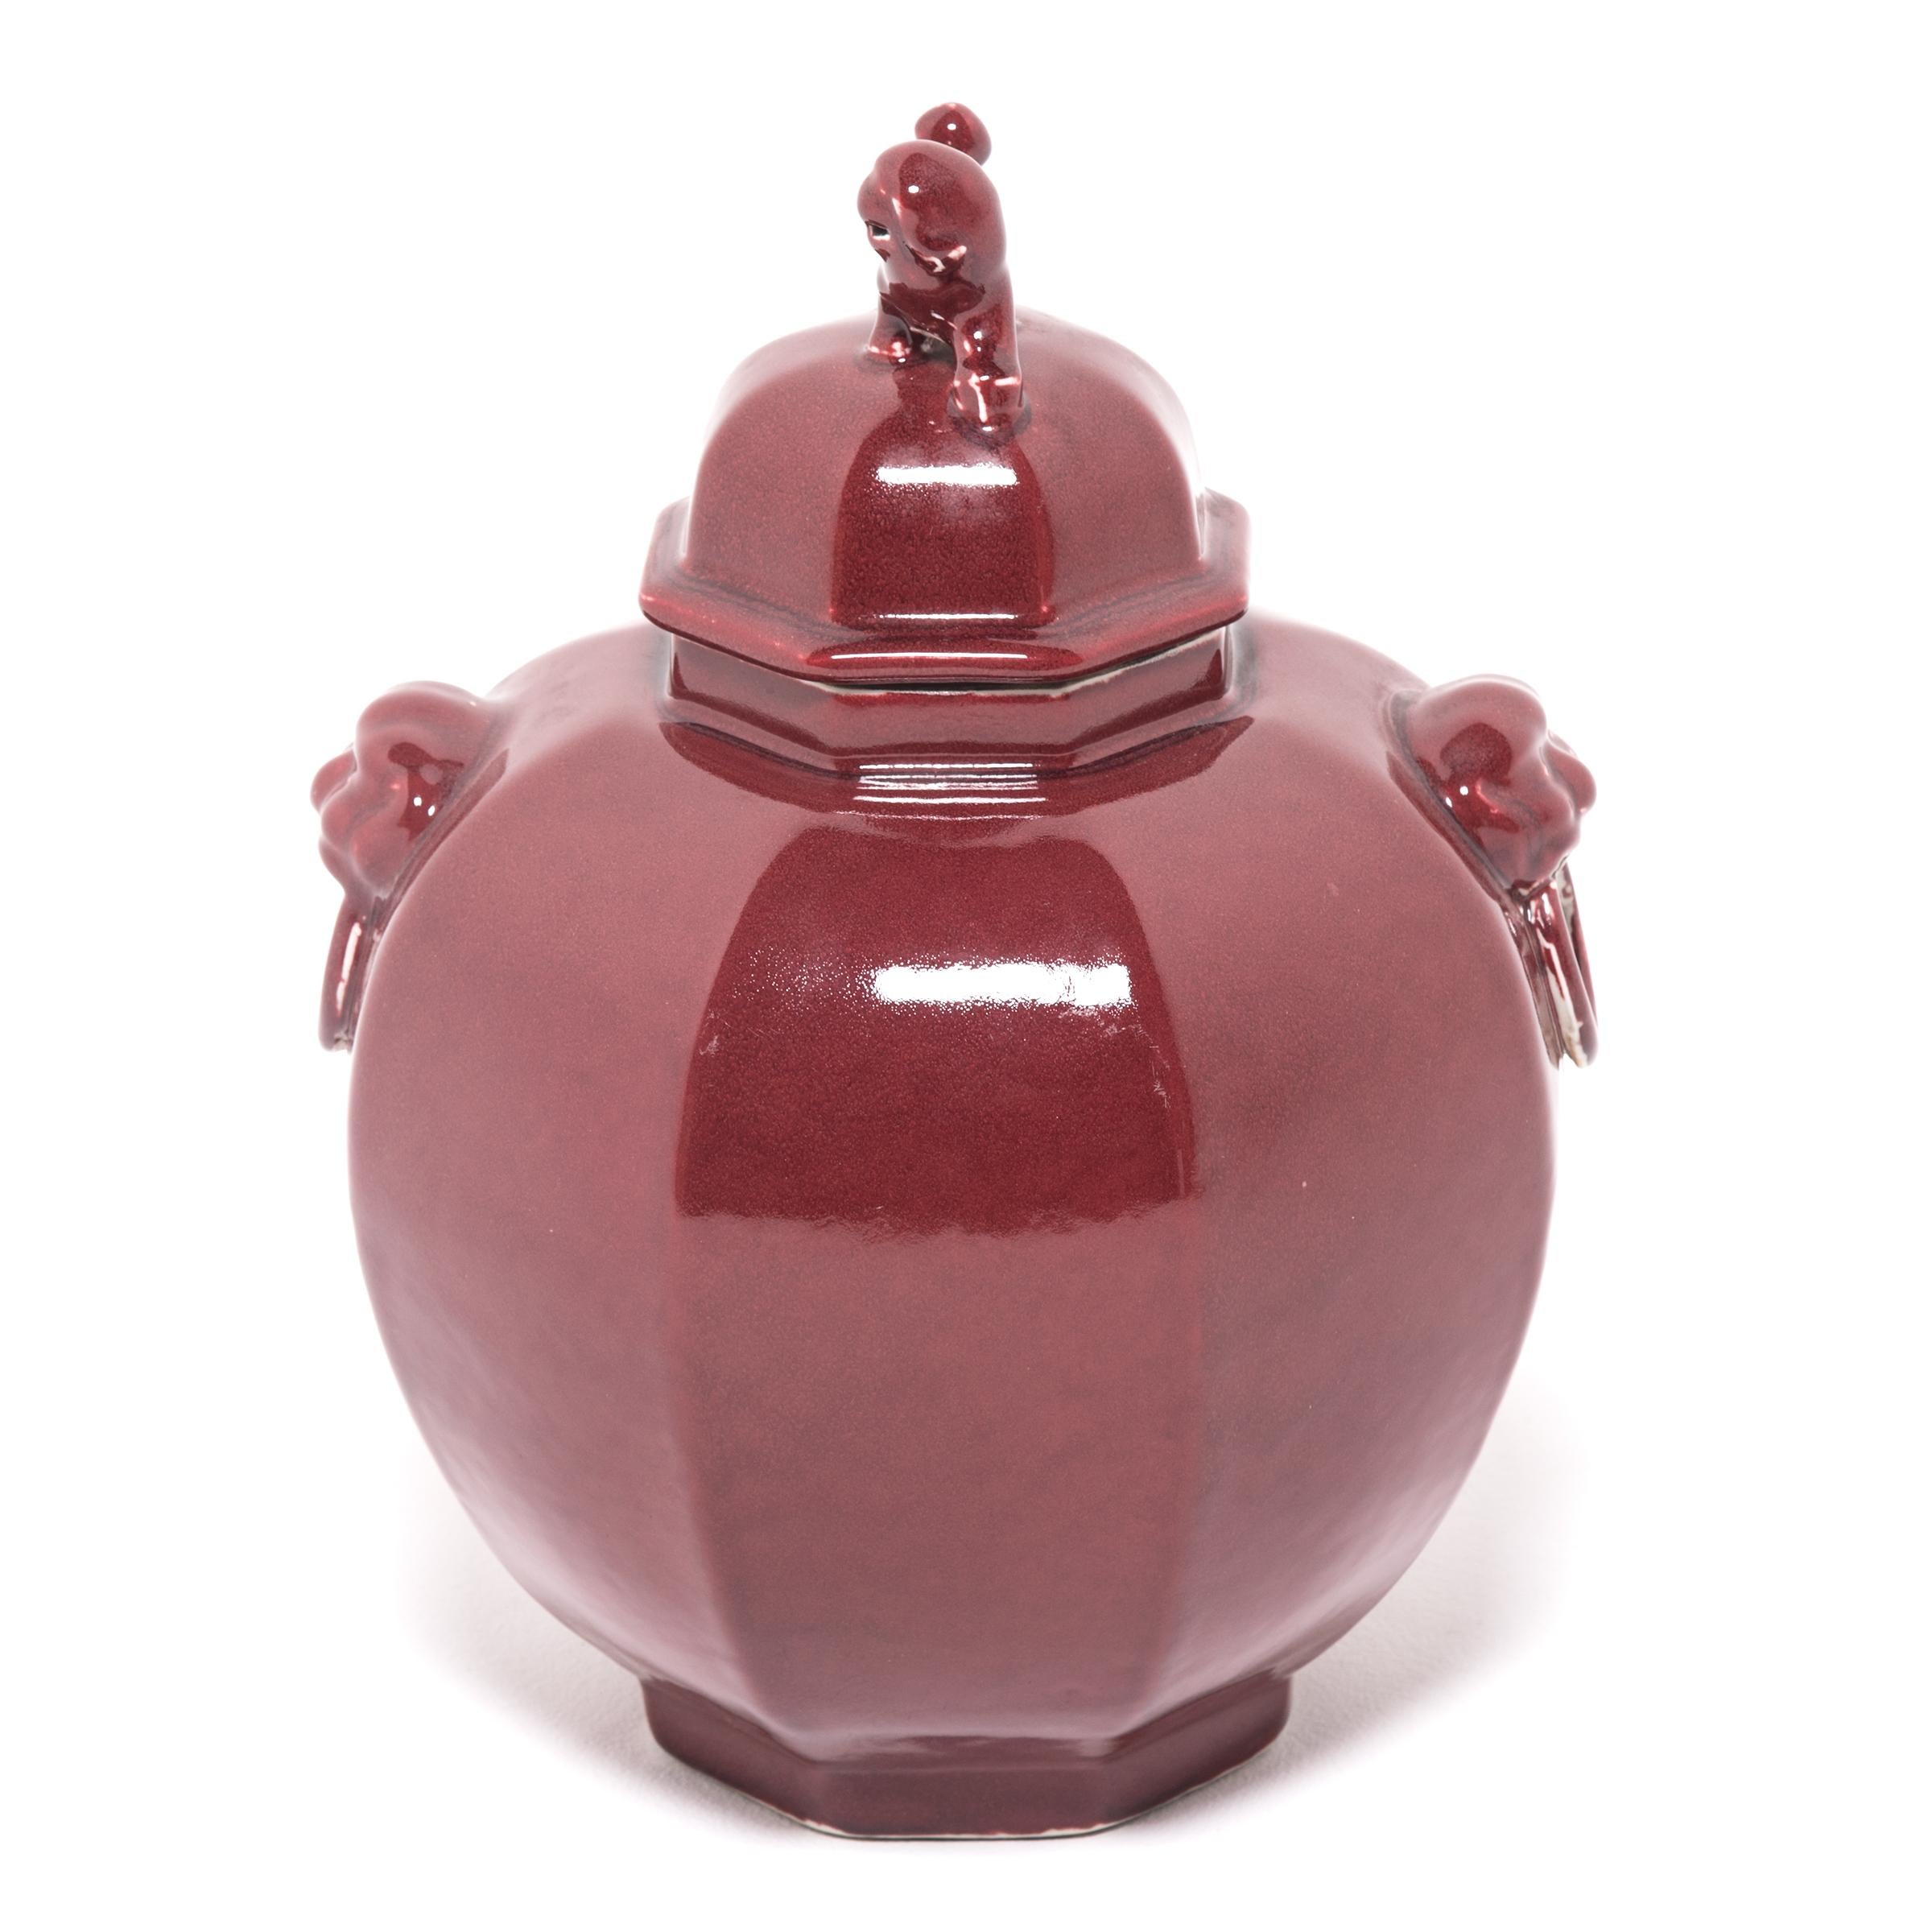 Eine satte, monochrome rote Glasur überzieht diese moderne Vase in Form eines Ingwerglases und lenkt die Aufmerksamkeit auf ihr modernes Profil und ihren skulpturalen Fu-Dog-Aufsatz. Diese mythischen, hundeähnlichen Löwen, die Shizi genannt werden,